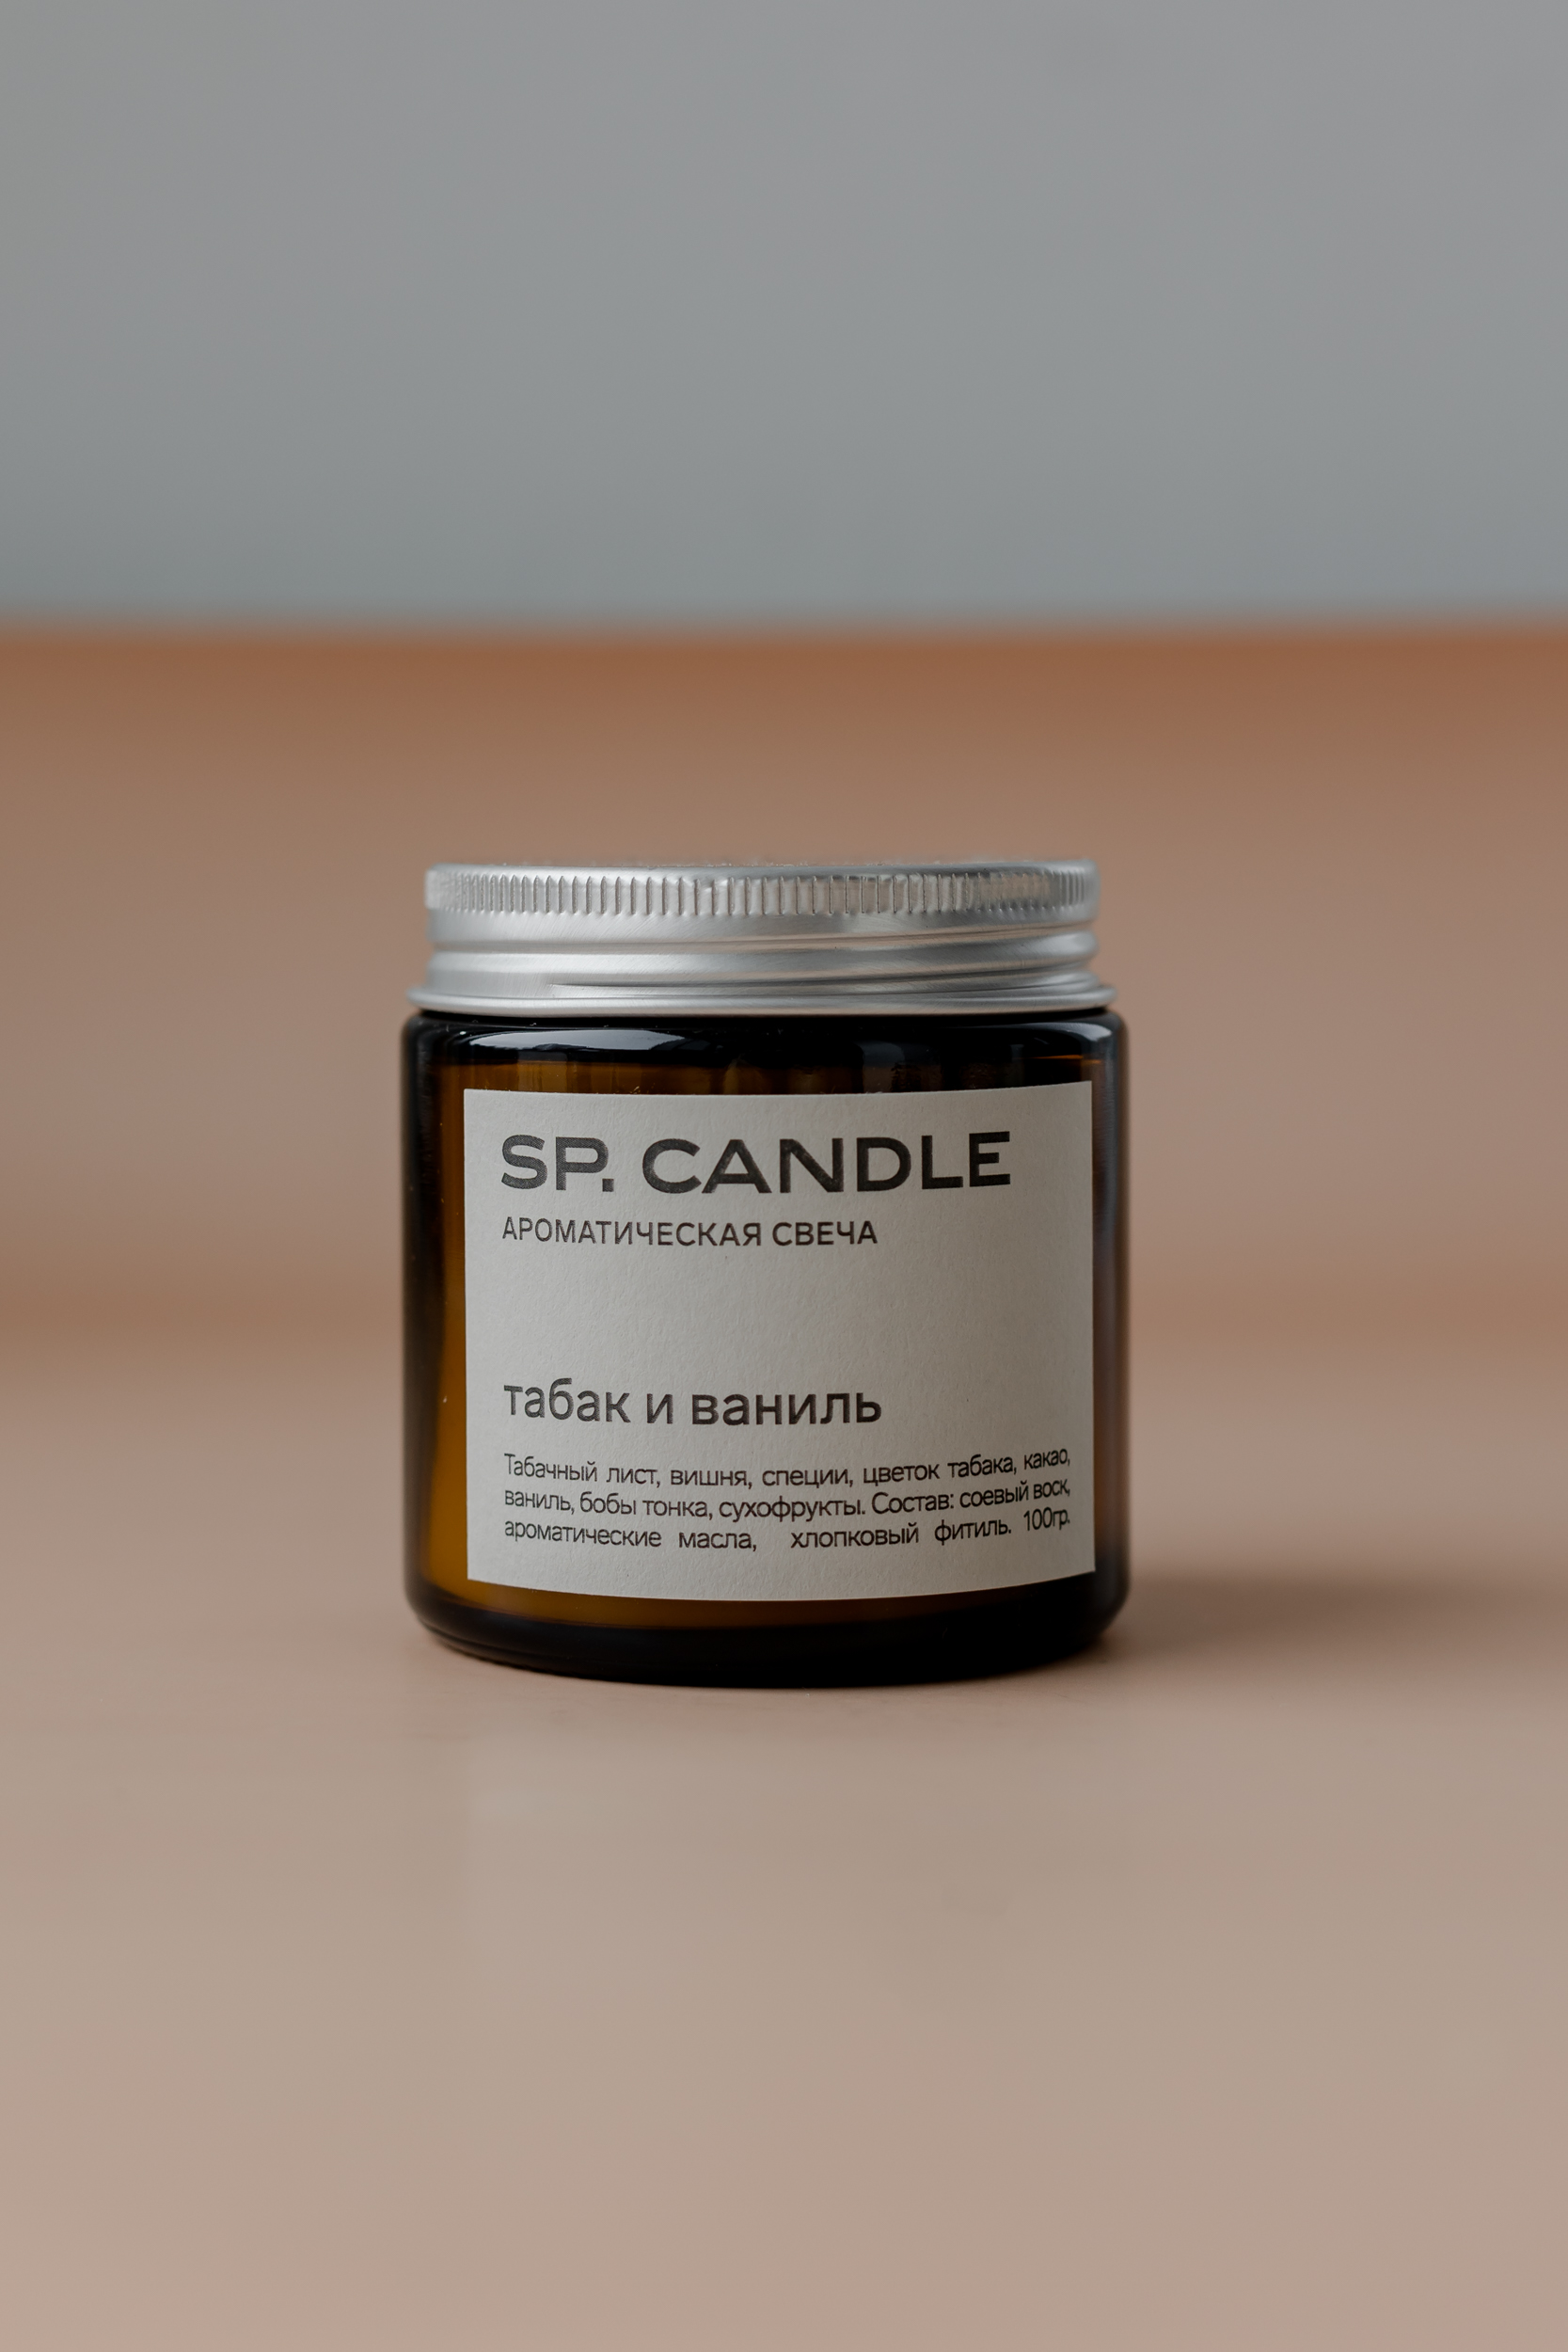 SP. CANDLE Ароматическая свеча Табак и ваниль, 100г